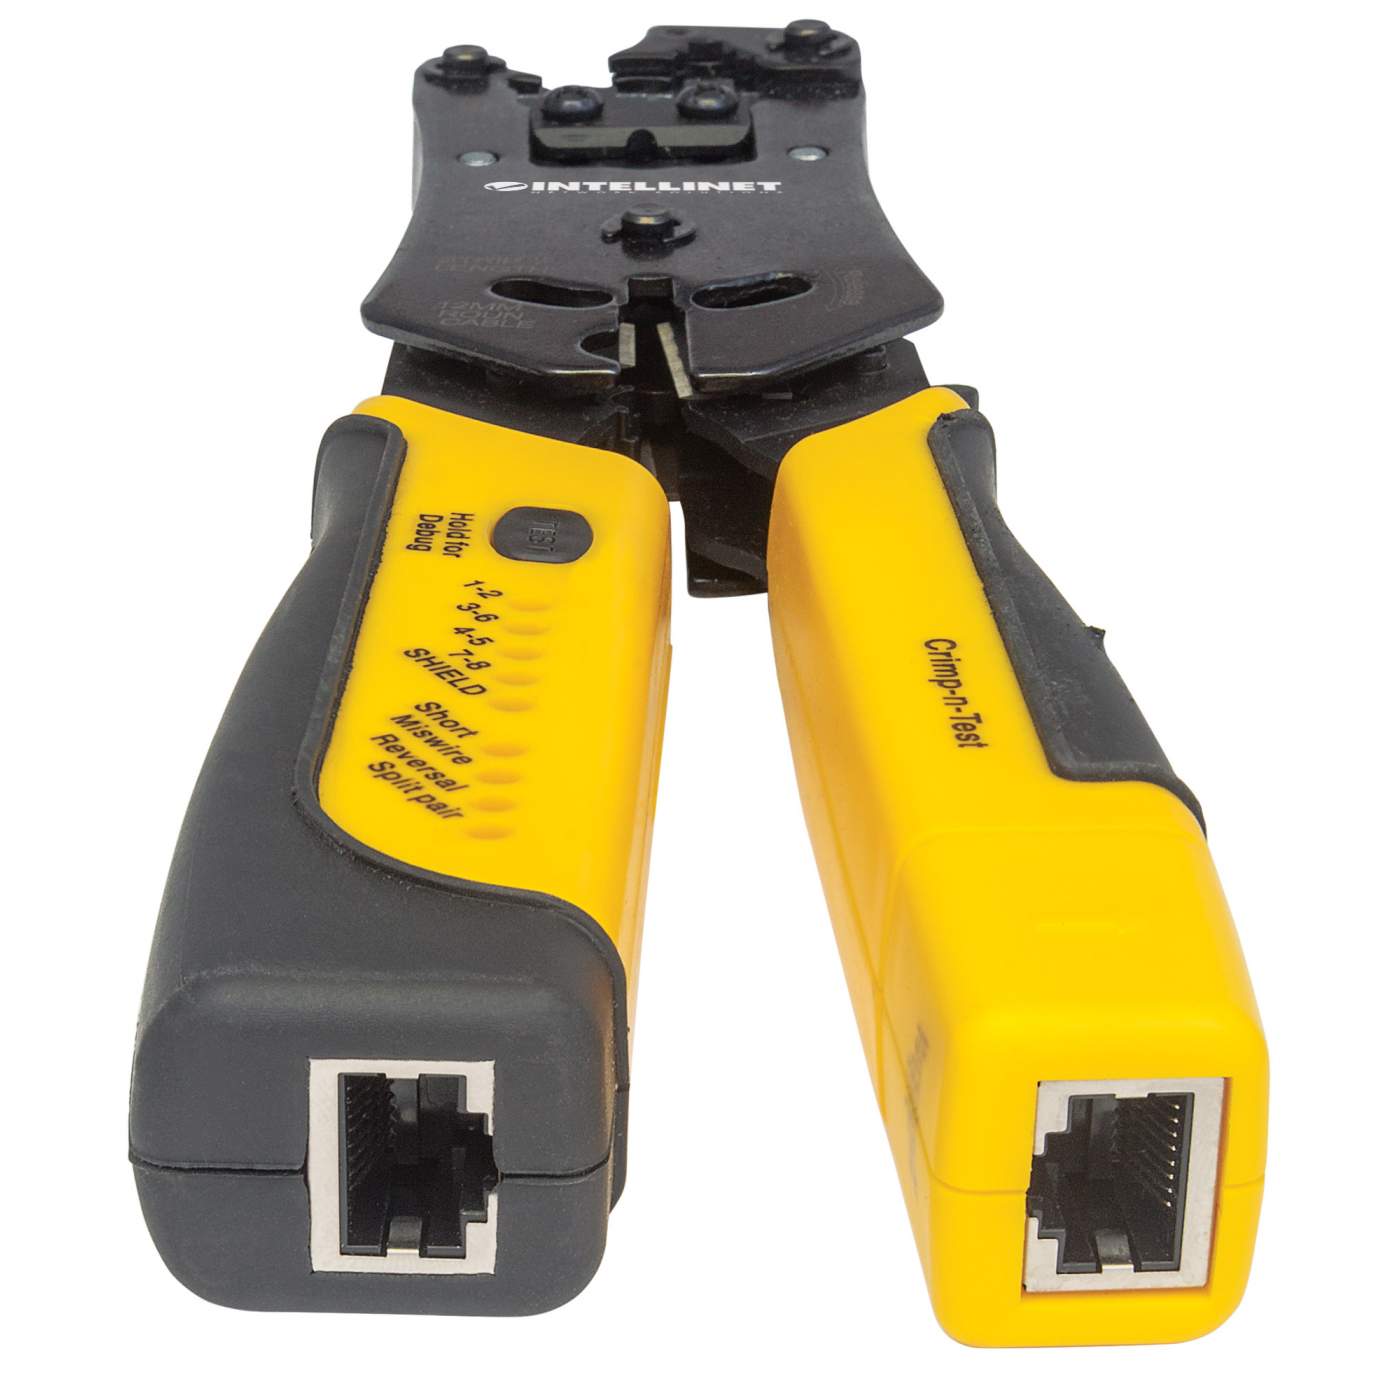 Universal Modular Plug Crimping Tool and Cable Tester Image 4